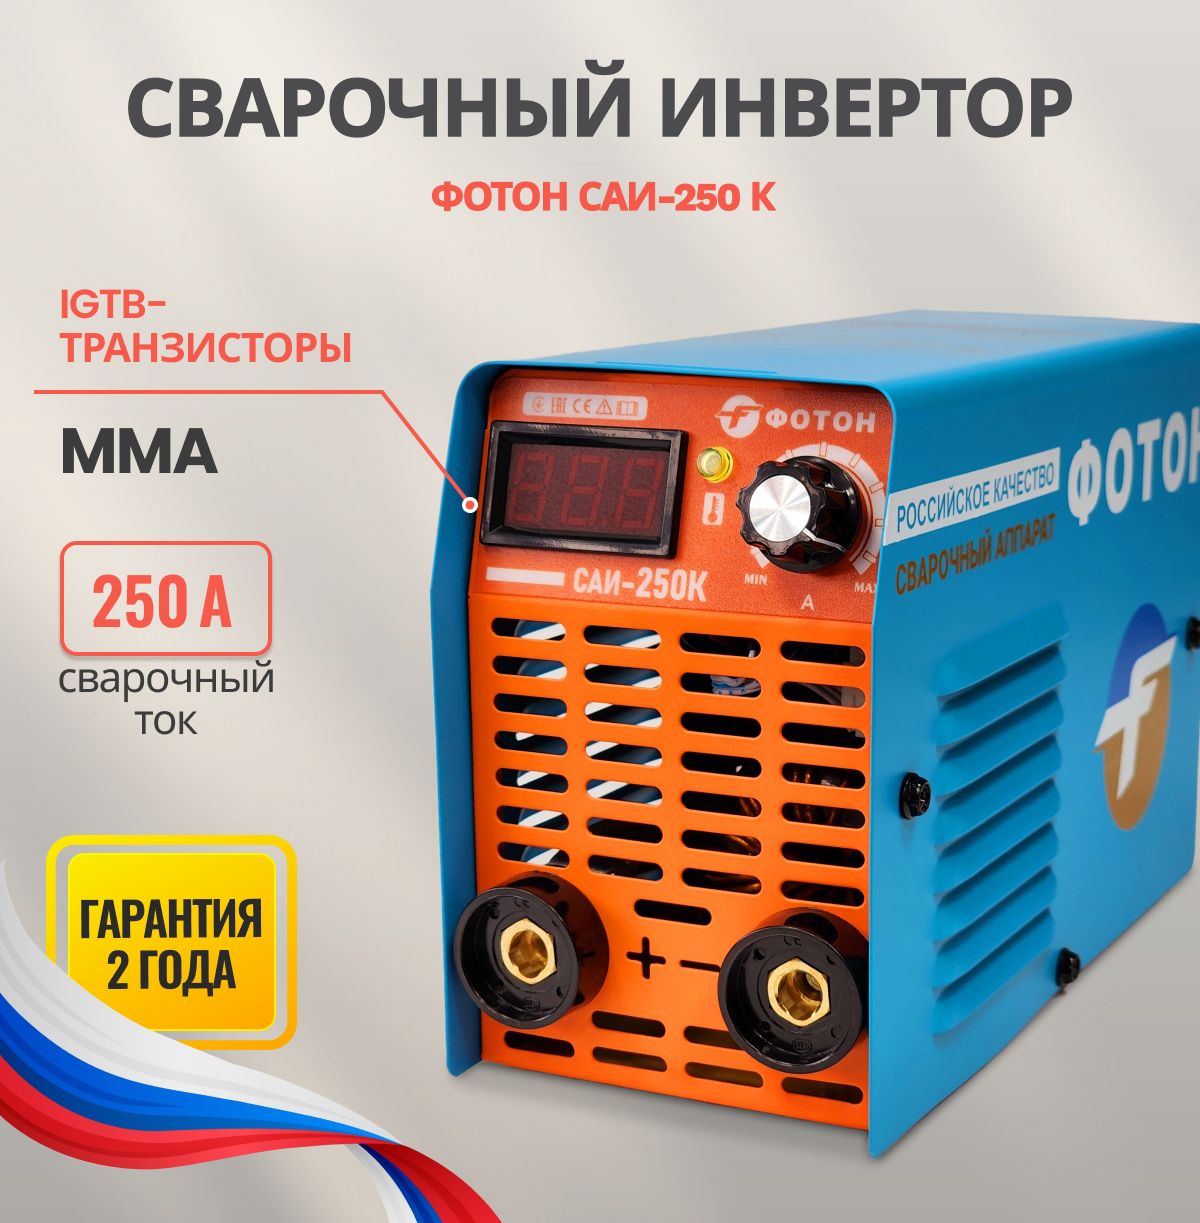 СварочныйинверторныйаппаратФОТОНСАИ-250К/Инвертордлясваркиштучнымэлектродом,длядома,гаражадачи.Отличныйподарокотцу,мужуидругу